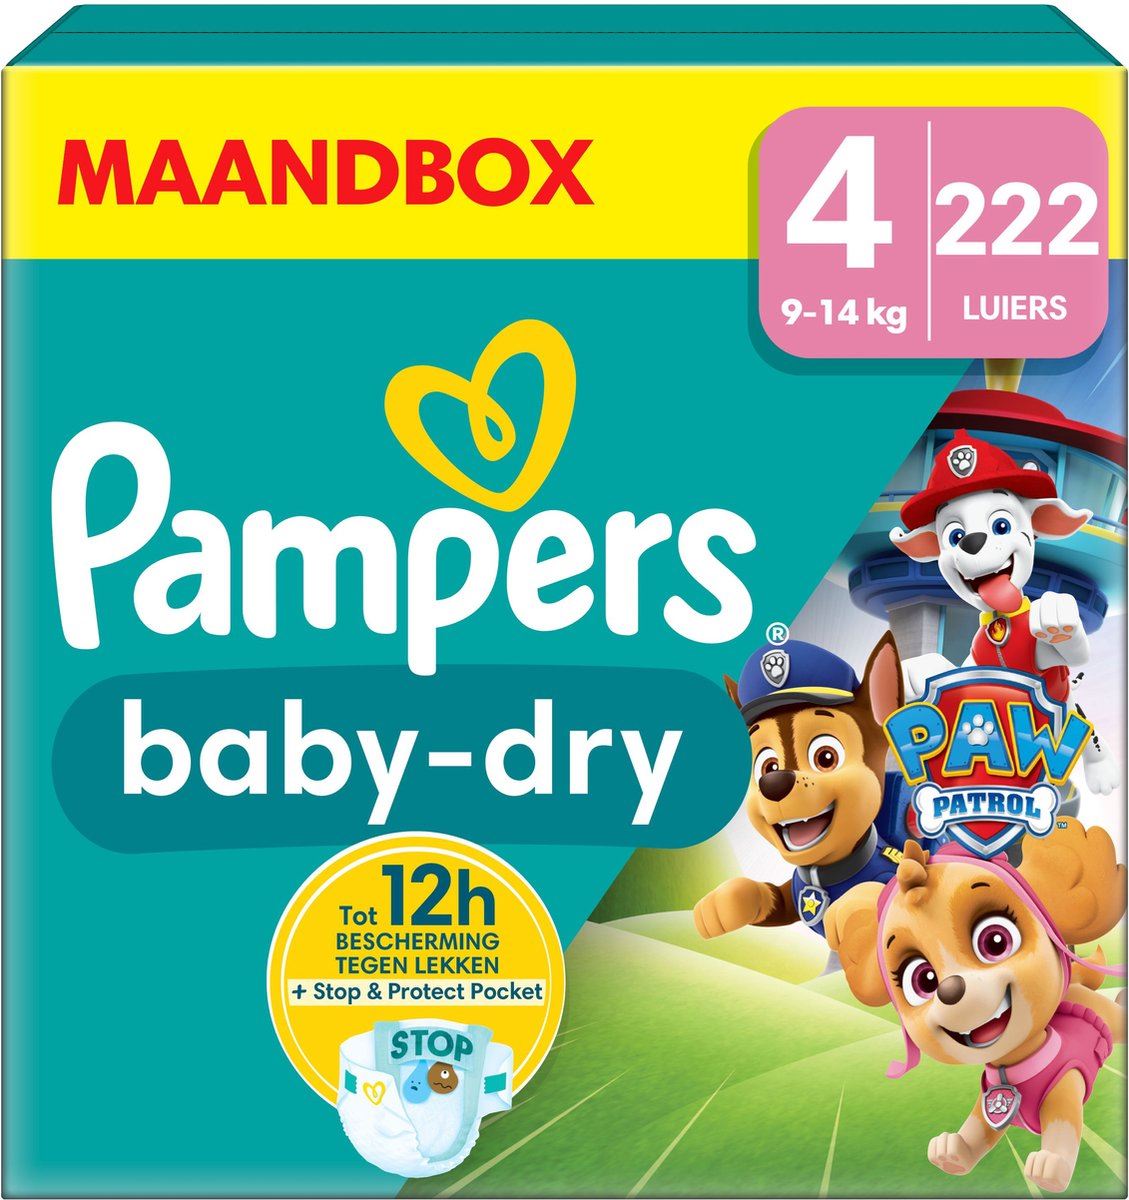 Pampers-Baby-Dry-Paw-Patrol-Maat-4-222-luiers-9-14-KG-